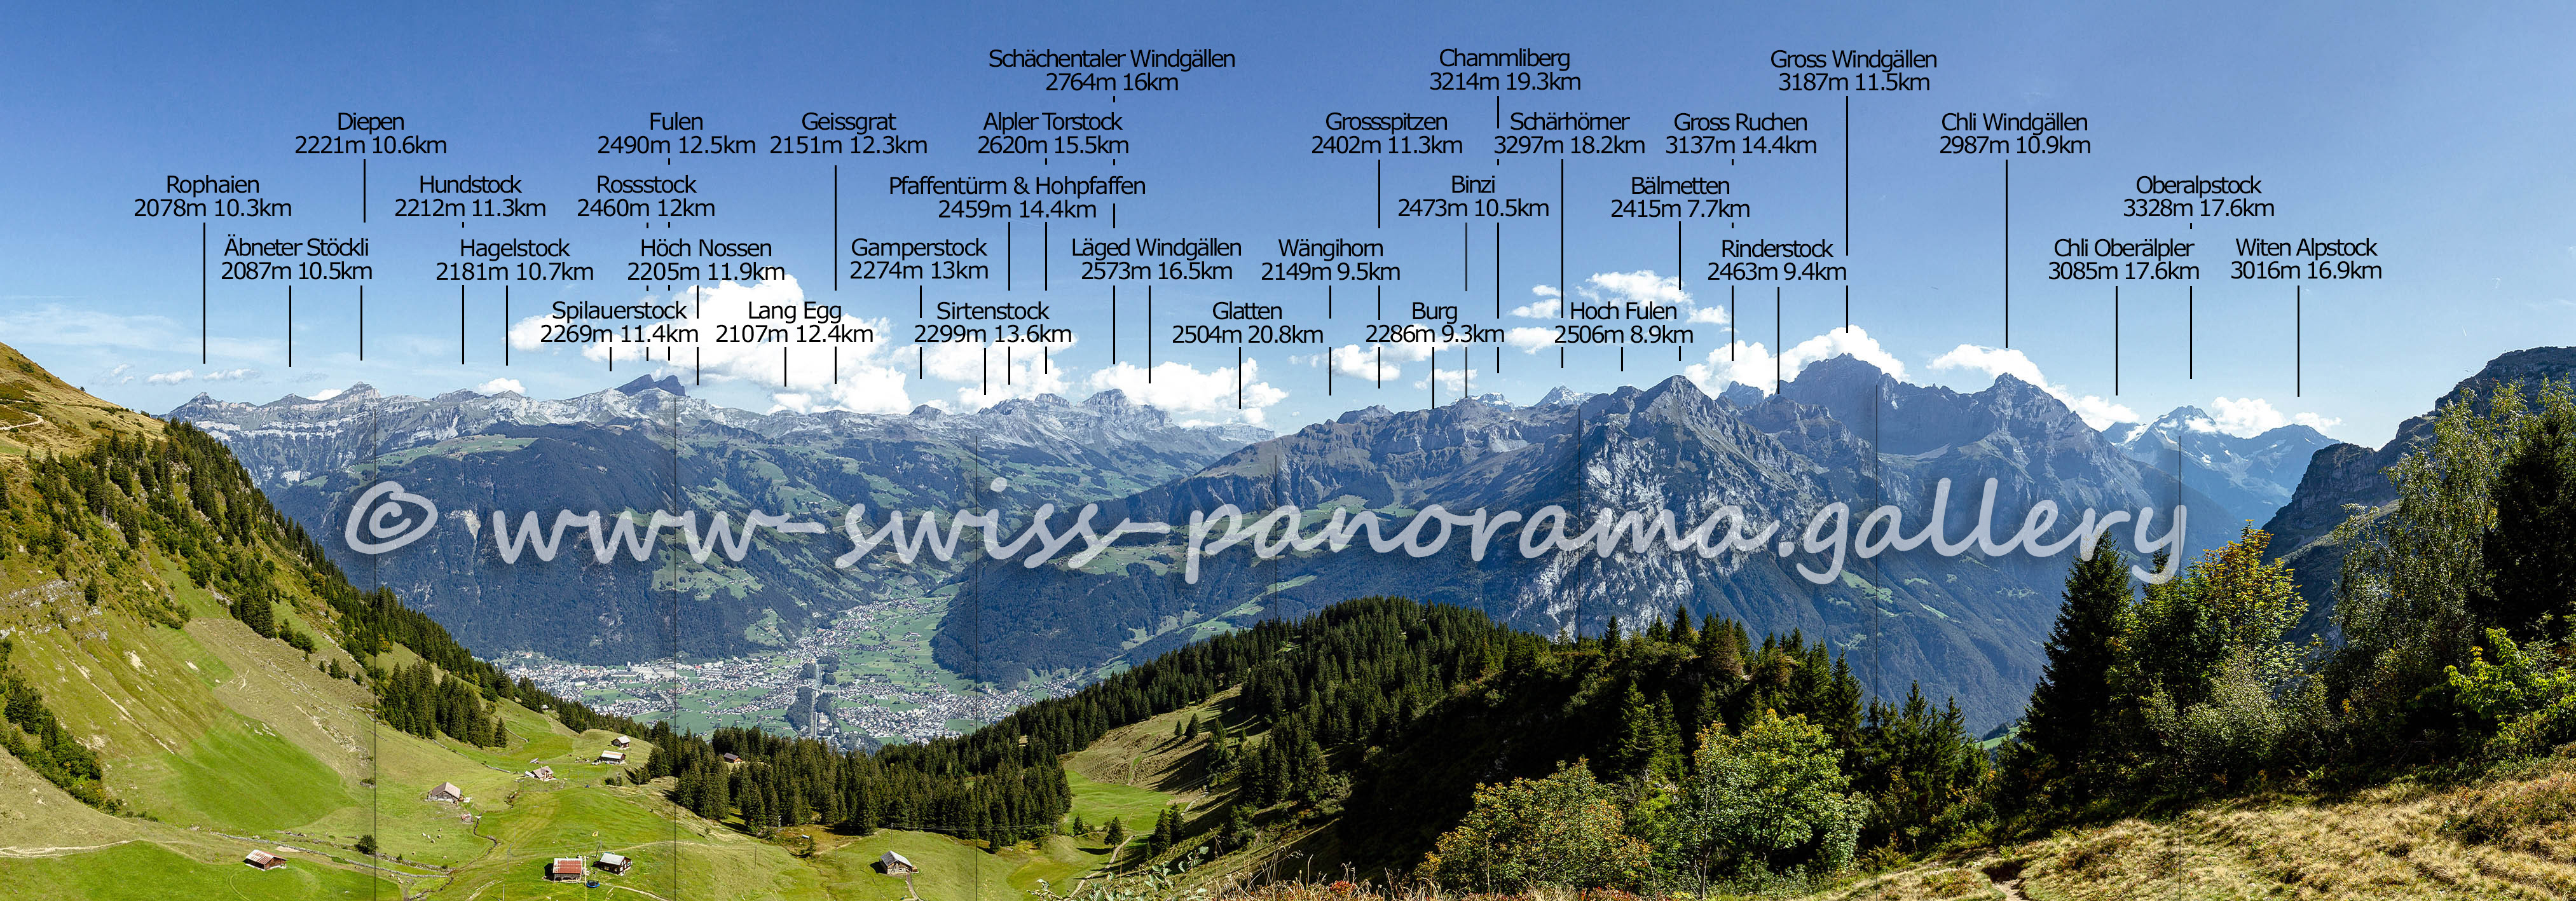 Alpenpanorama von der Alp Grat oberhalb Brüsti, Urner Alpen, swiss-panorama.gallery